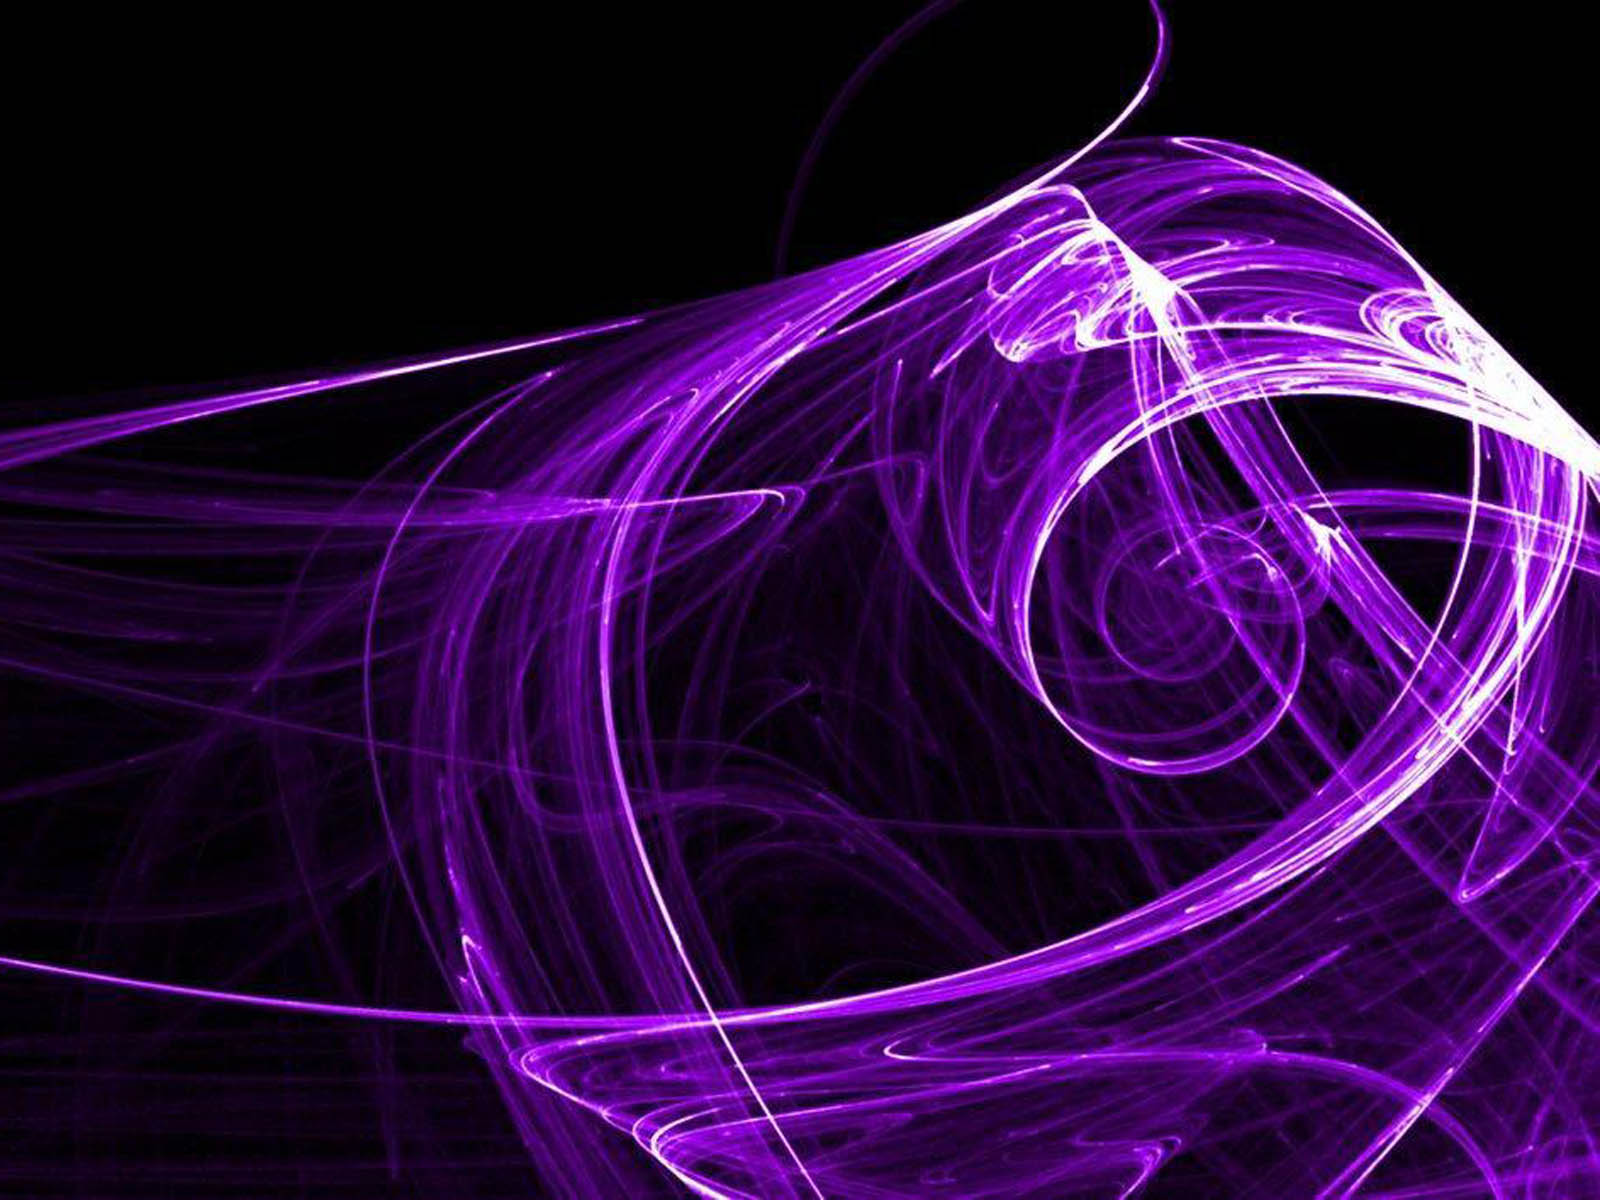 Abstract Desktop Wallpapers Purple Abstract Desktop Backgrounds